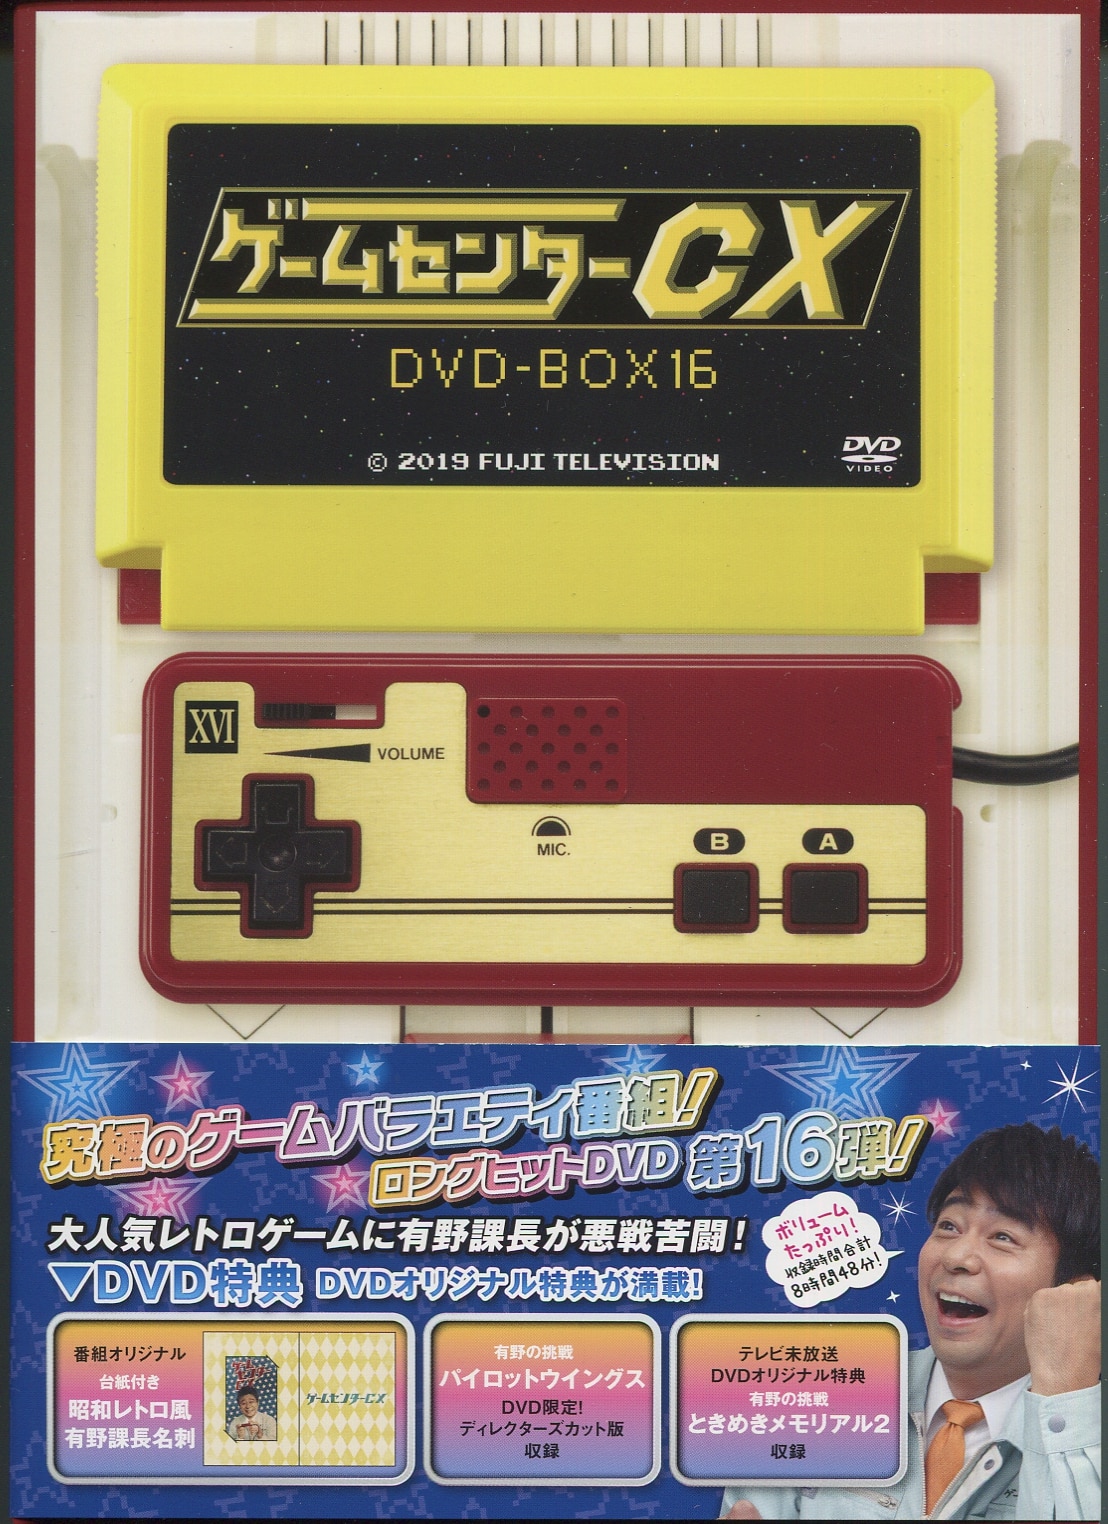 まんだらけ通販 Dvd 初回 ゲームセンターcx Dvd Box 16 Disc A 収納box ケース少イタミ 札幌店からの出品